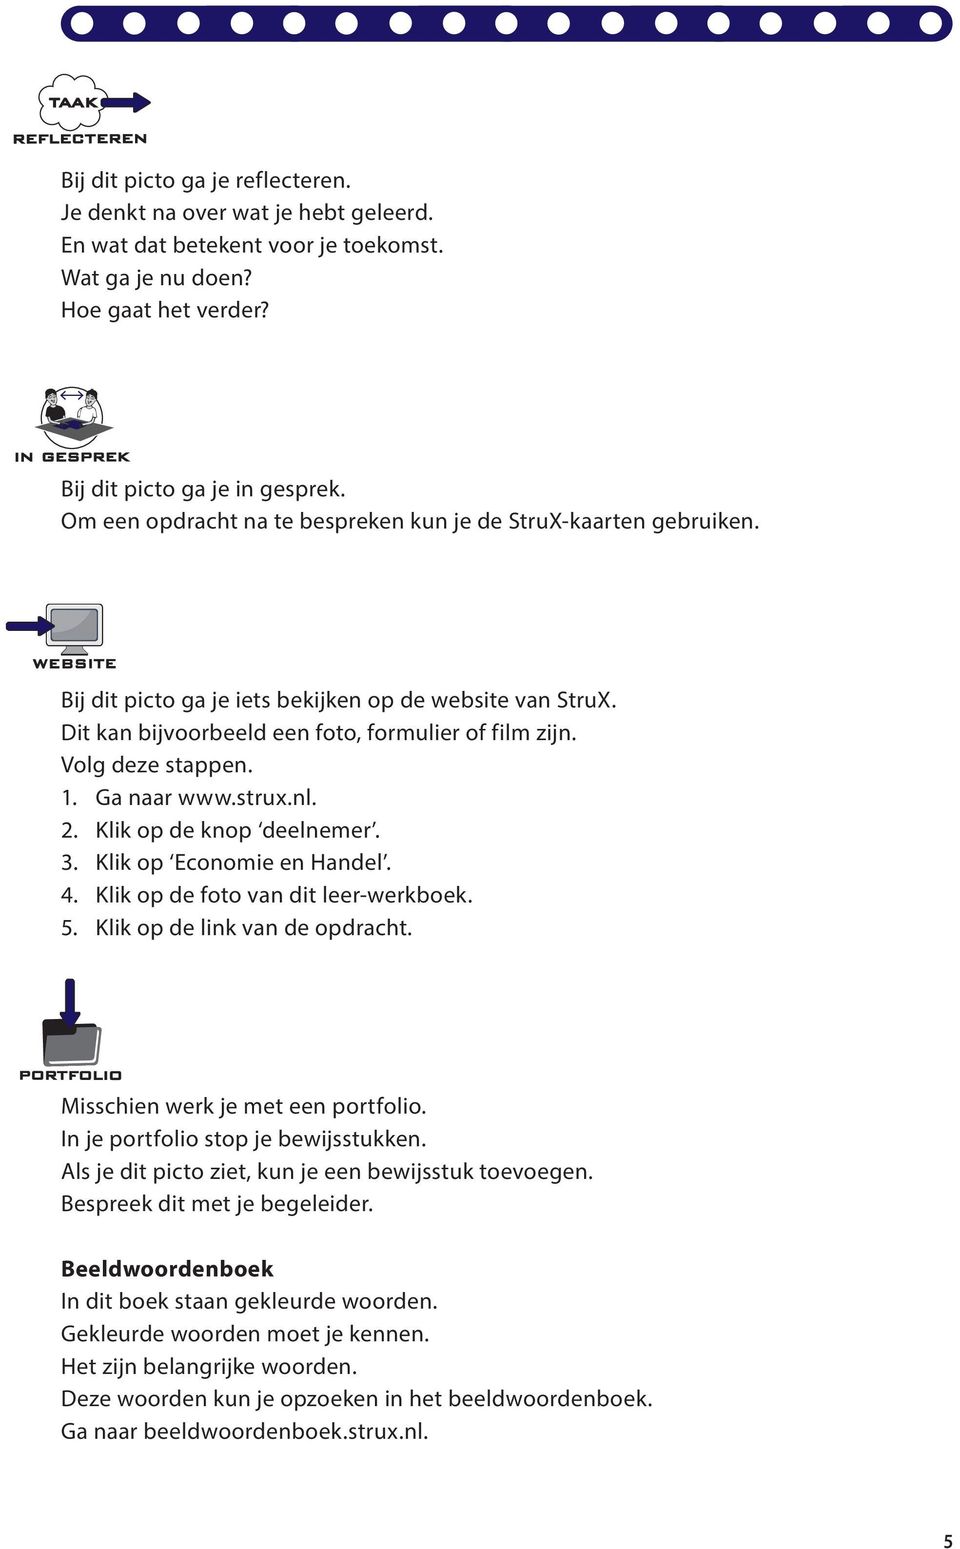 1. Ga naar www.strux.nl. 2. Klik op de knop deelnemer. 3. Klik op Economie en Handel. 4. Klik op de foto van dit leer-werkboek. 5. Klik op de link van de opdracht. Misschien werk je met een portfolio.